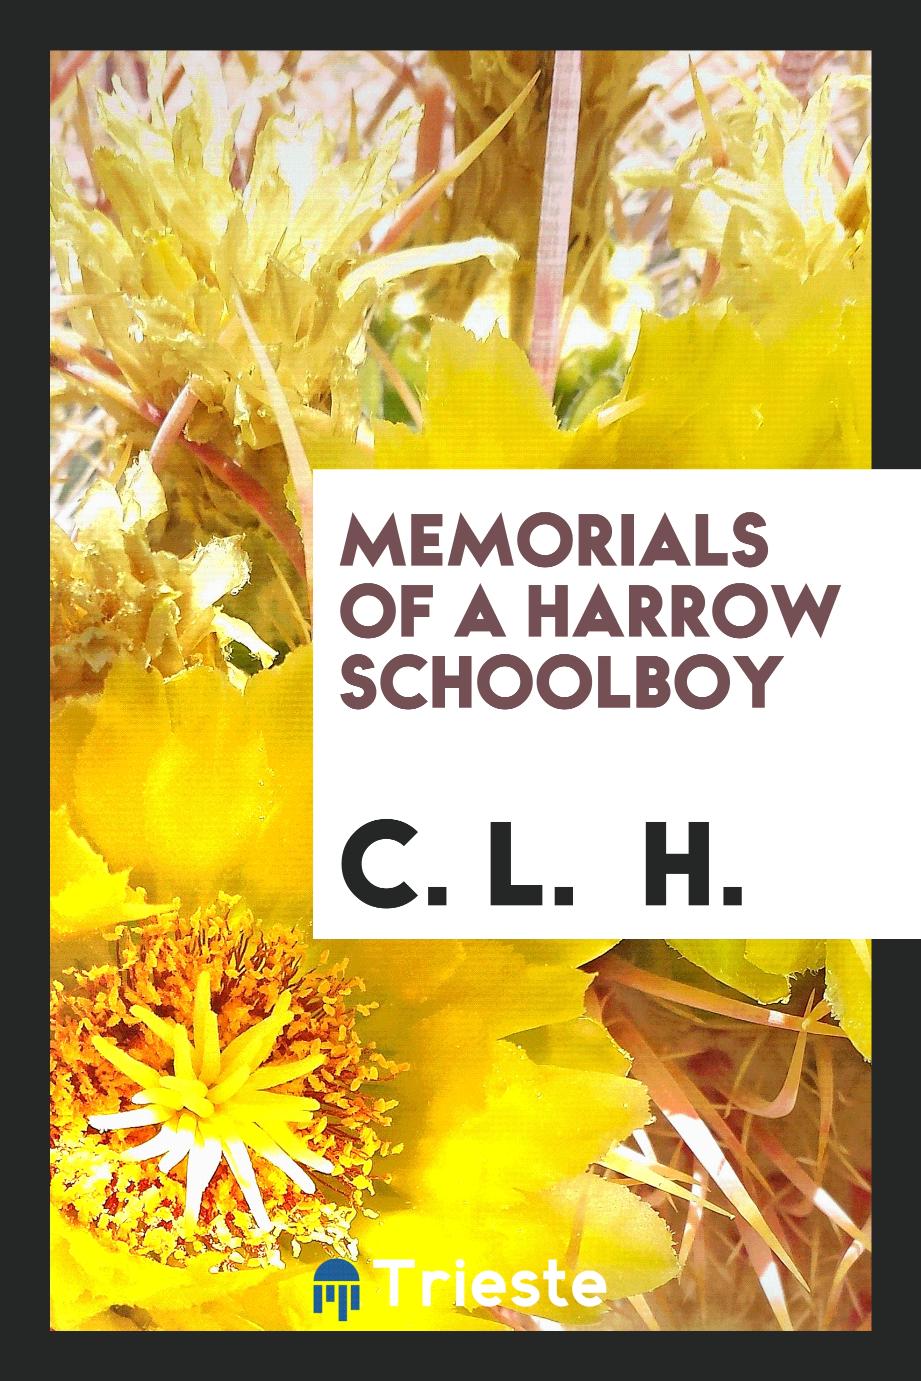 Memorials of a Harrow schoolboy